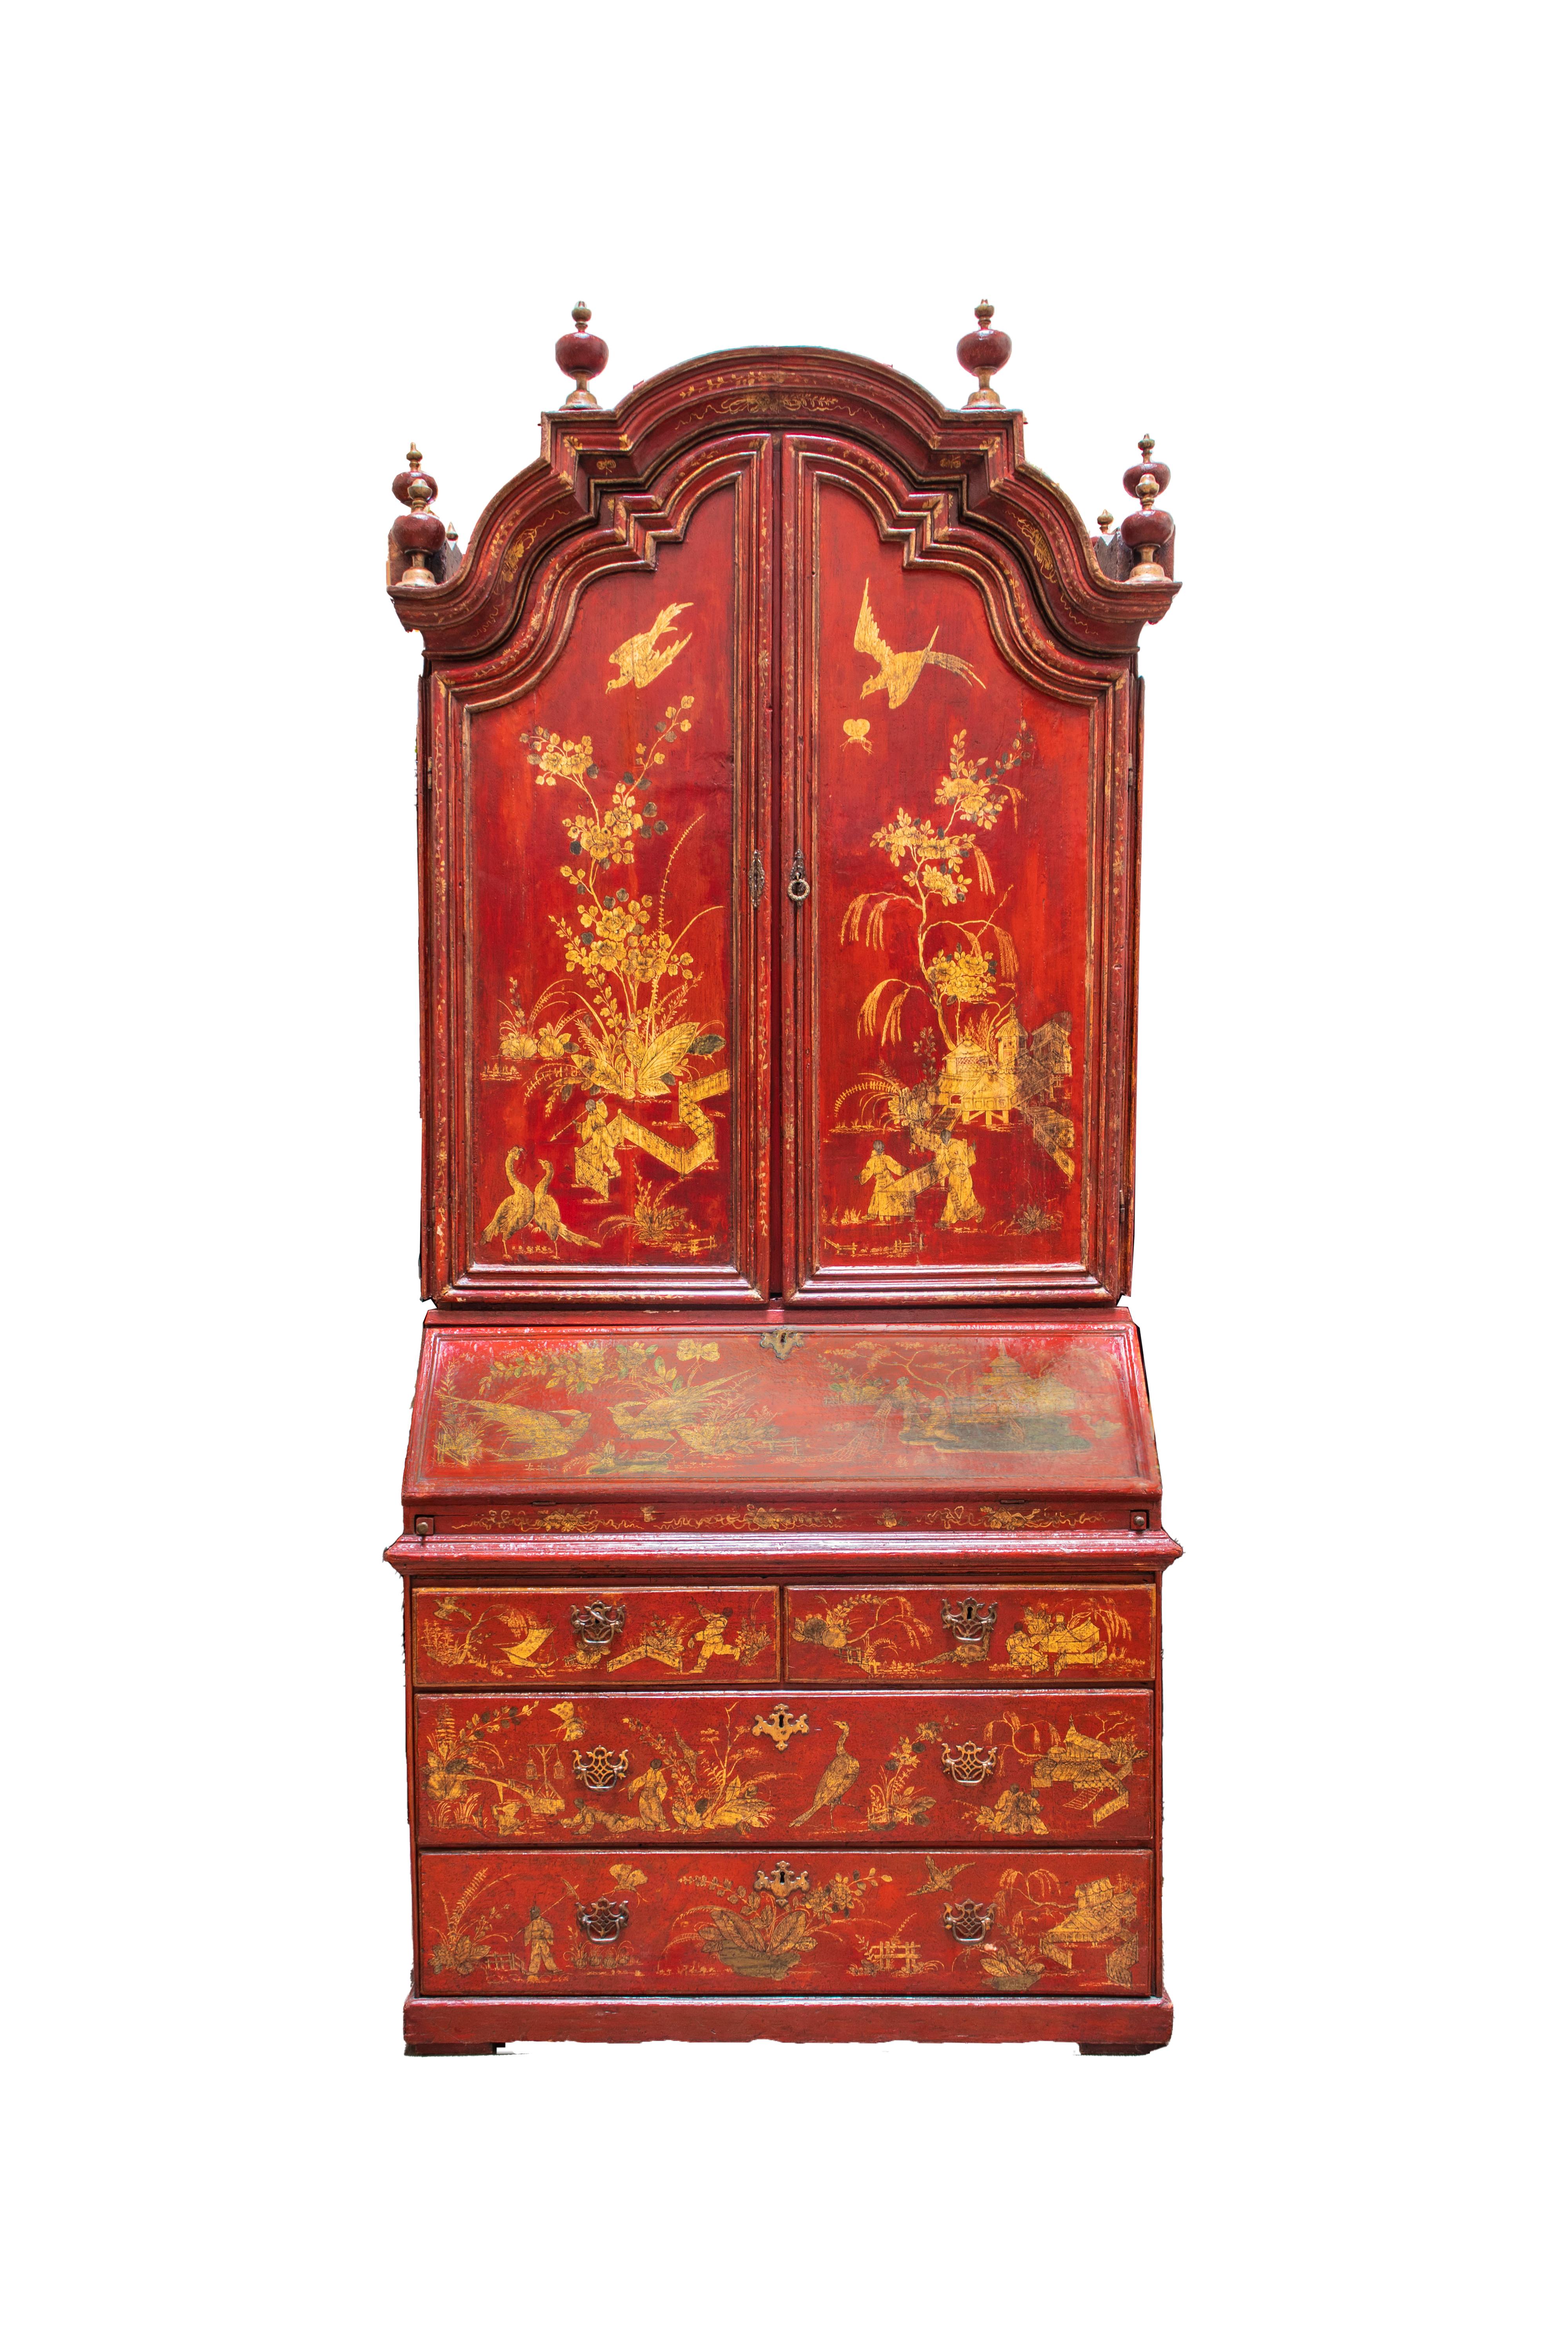 Très beau meuble secrétaire de style Queen Anne en Chinoiserie à panneaux de japanine rouge. Le dessus à triple dôme avec huit fleurons en forme d'urne surmontant deux portes, l'intérieur ouvrant est orné de paysages et de motifs floraux peints à la